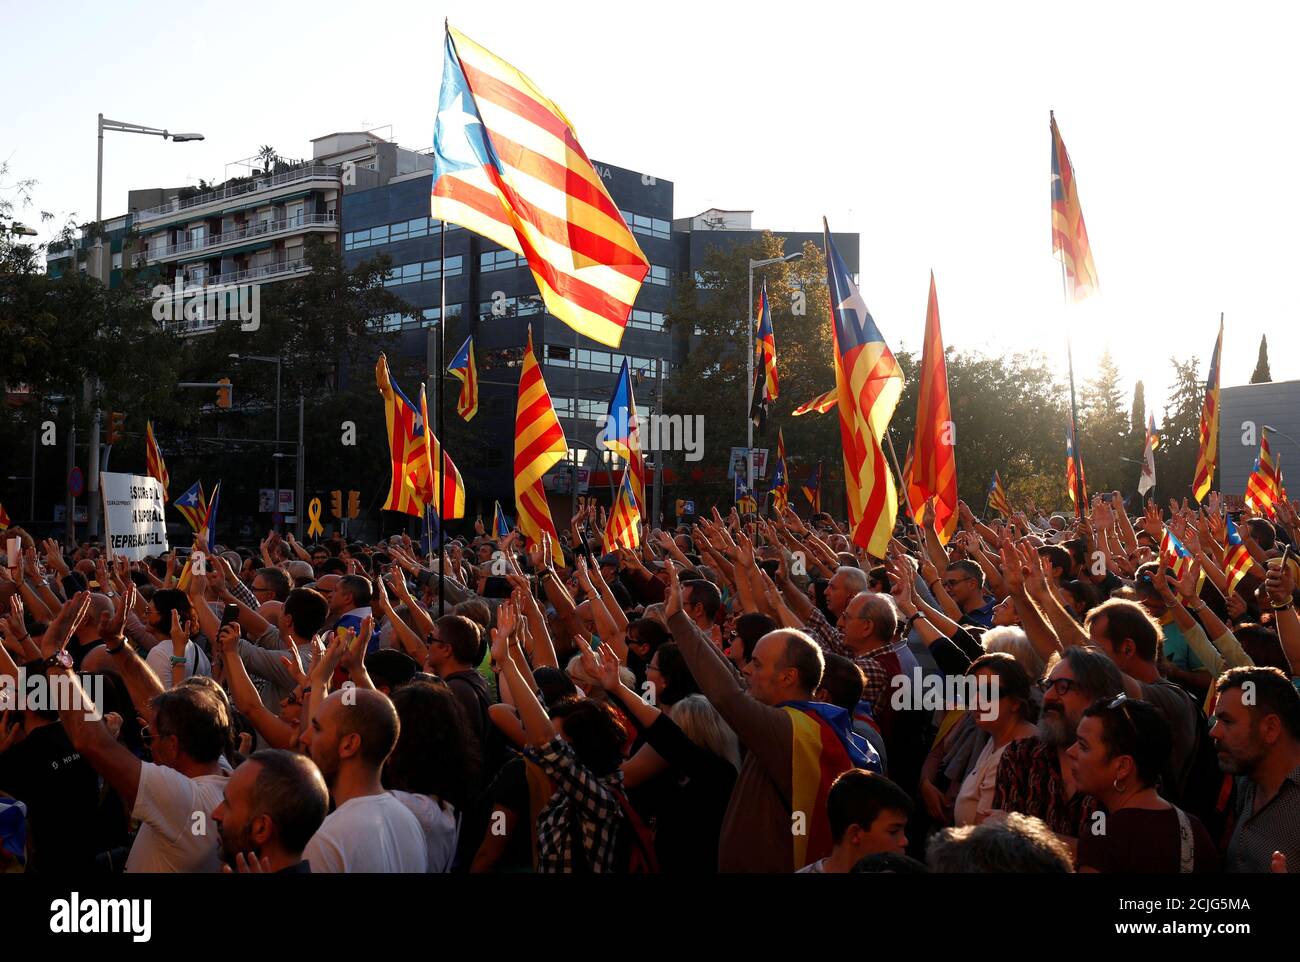 Katalanische Demonstranten, die sich für die Unabhängigkeit einsetzen, heben ihre Hände während eines Protestes, um die Freilassung inhaftierten Separatistenführer in Barcelona, Spanien, am 26. Oktober 2019 zu fordern. REUTERS/Sergio Perez Stockfoto